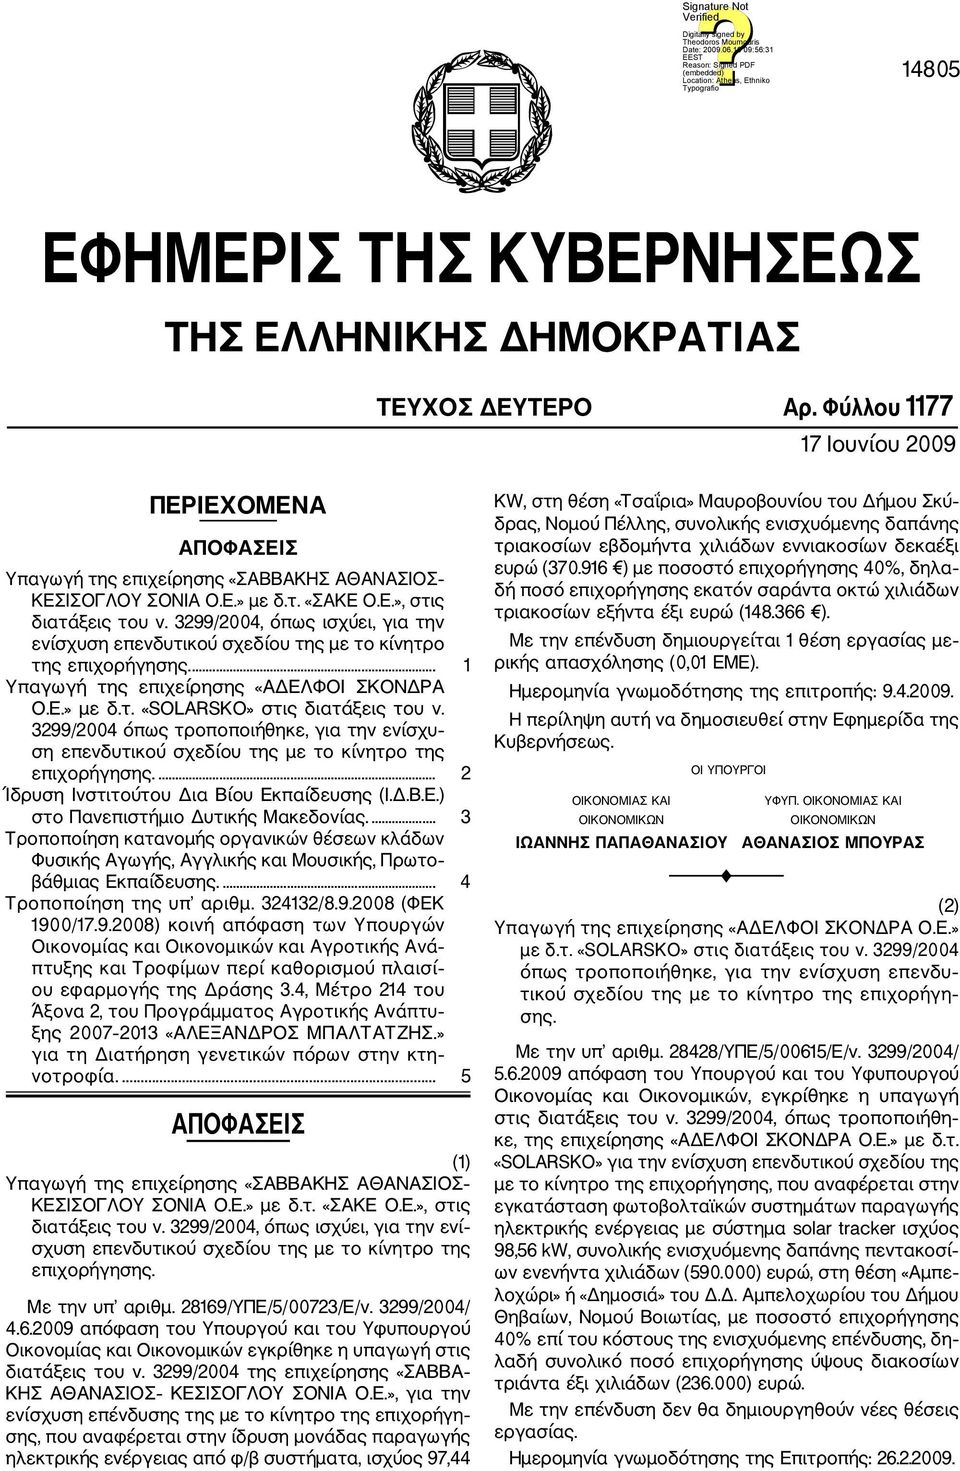 3299/2004 όπως τροποποιήθηκε, για την ενίσχυ ση επενδυτικού σχεδίου της με το κίνητρο της επιχορήγησης.... 2 Ίδρυση Ινστιτούτου Δια Βίου Εκπαίδευσης (Ι.Δ.Β.Ε.) στο Πανεπιστήμιο Δυτικής Μακεδονίας.